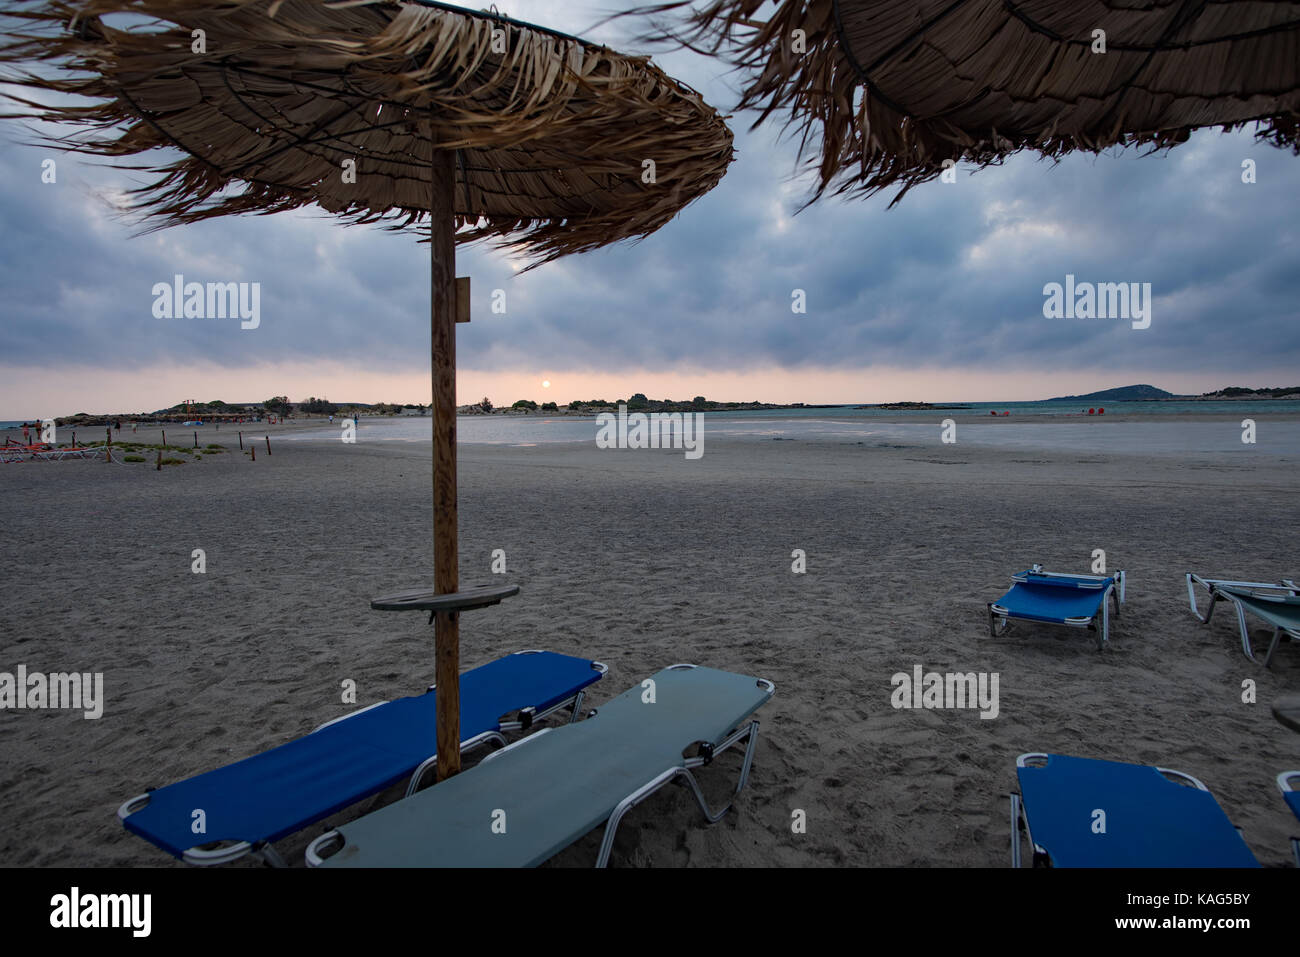 La playa de elafonisi con palm ubmrellas en malas condiciones climáticas Foto de stock